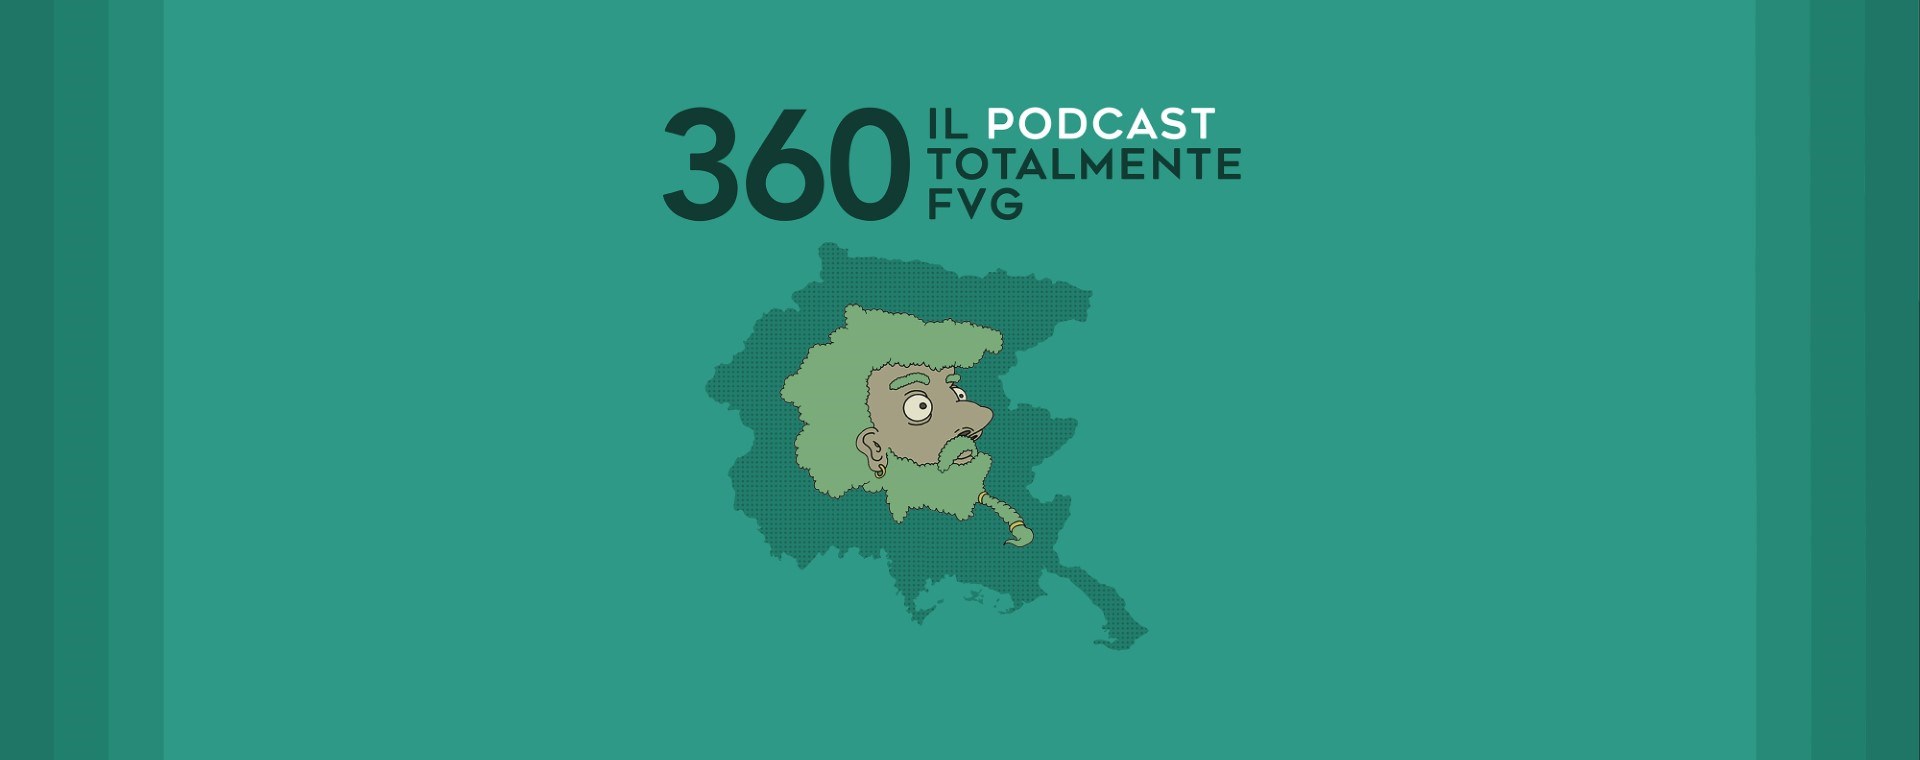 360 Totalmente FVG è il podcast di Banca 360 FVG 